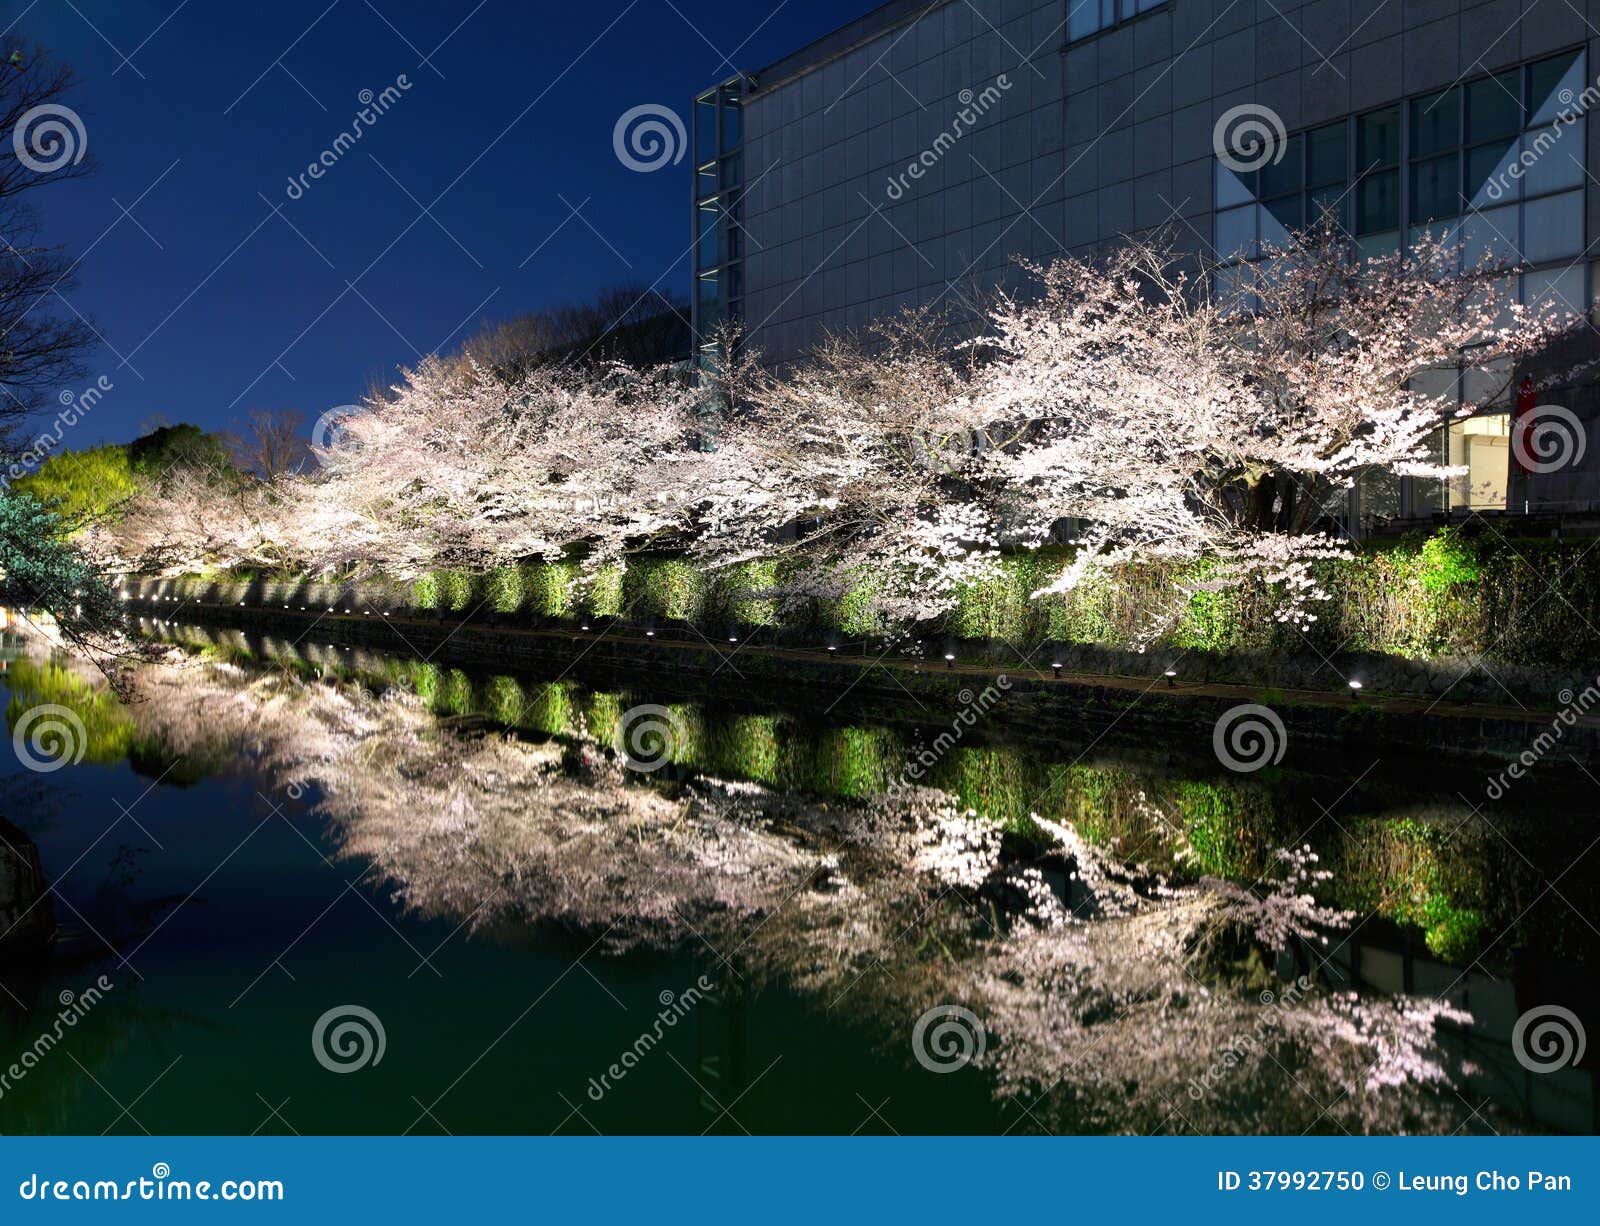 biwa lake canal with sakura tree besides